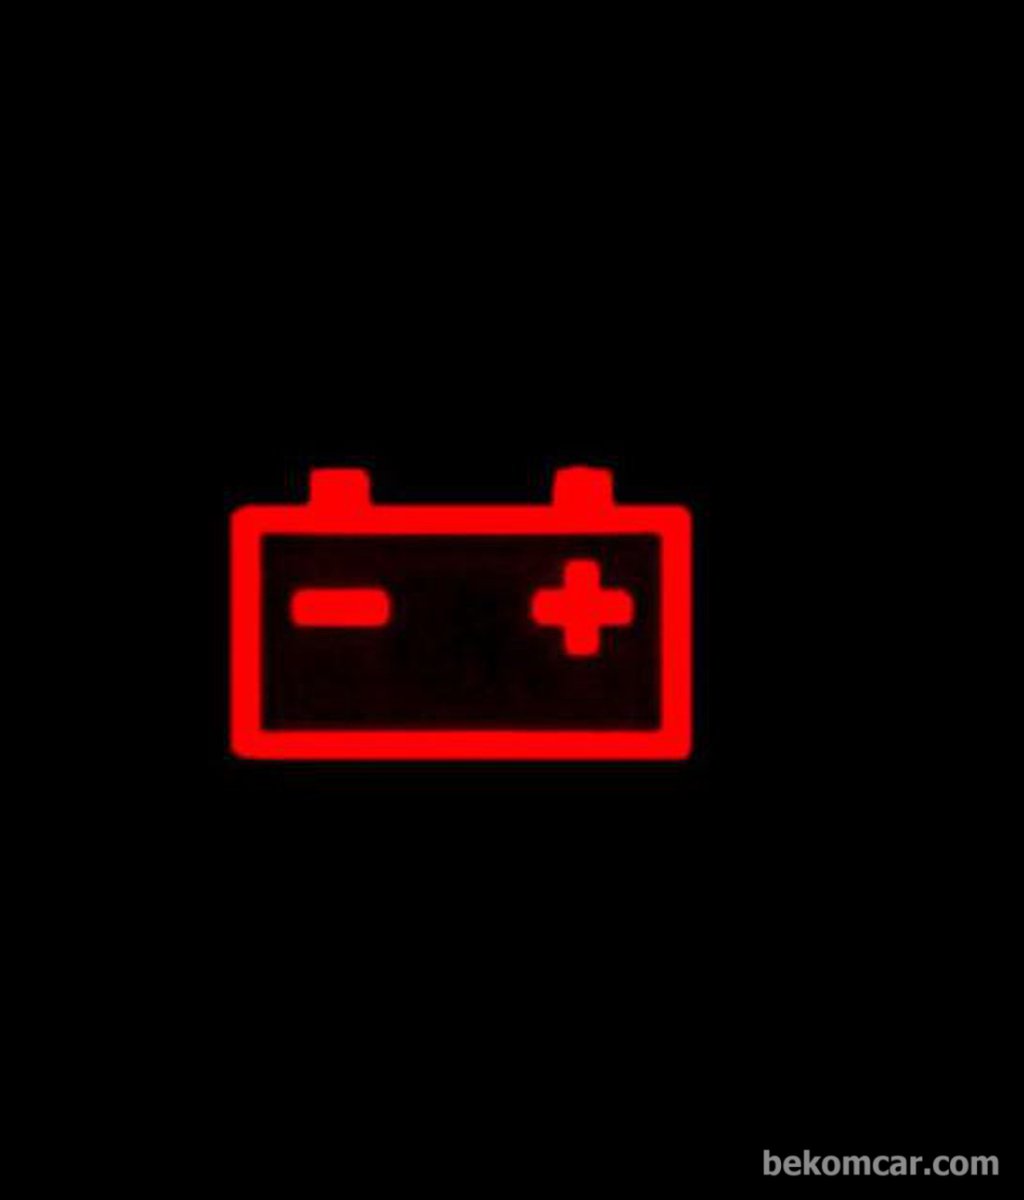 Low battery warning light|bekomcar.com